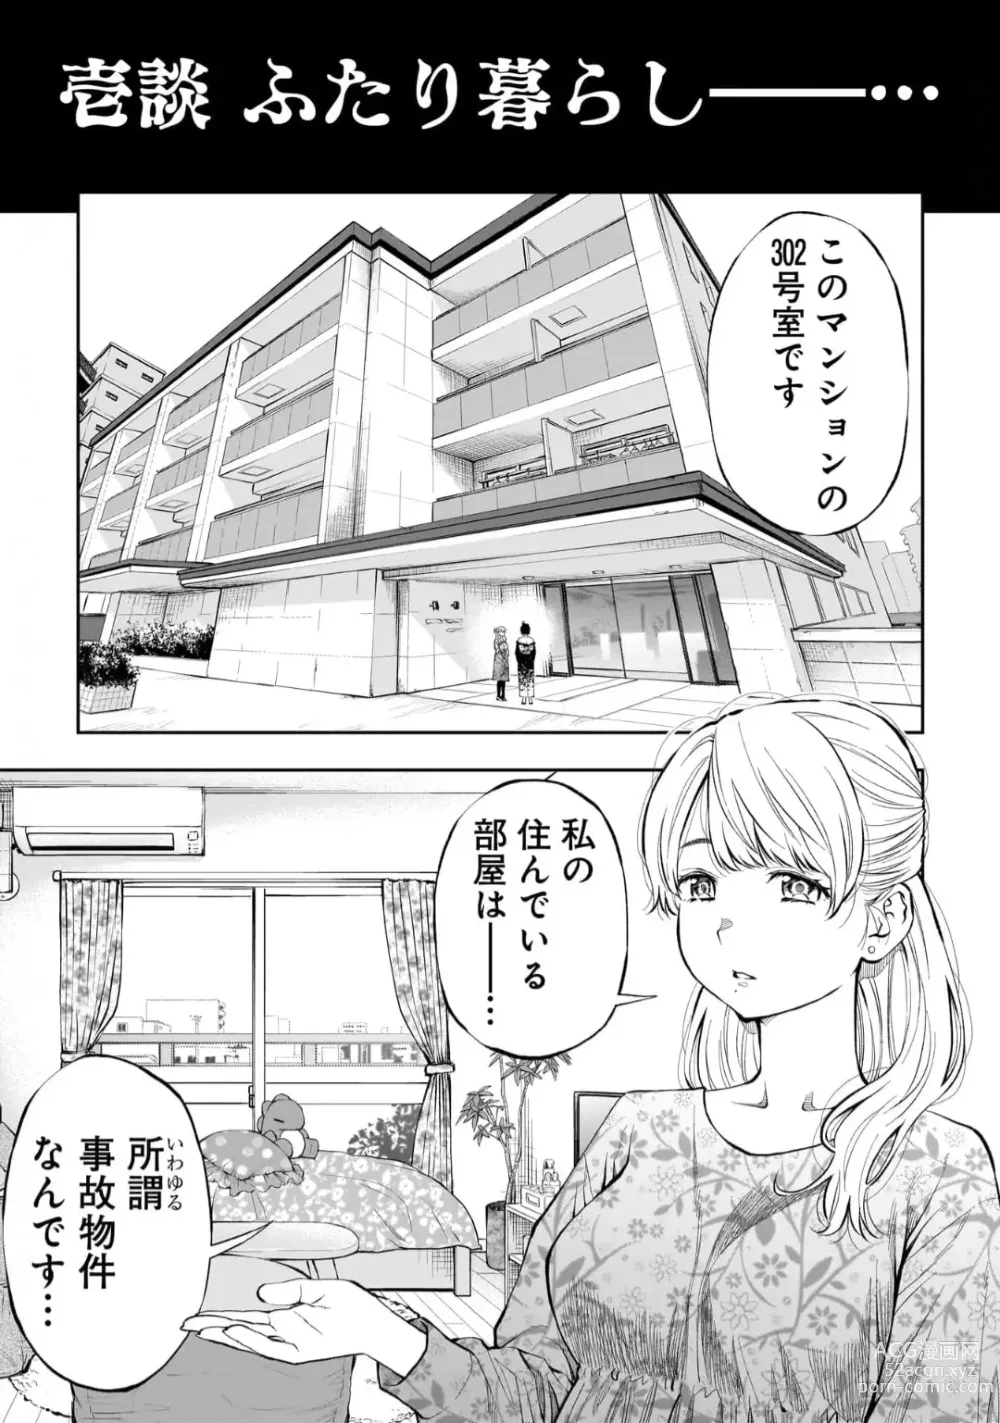 Page 4 of manga Kai Waidan Ch.1